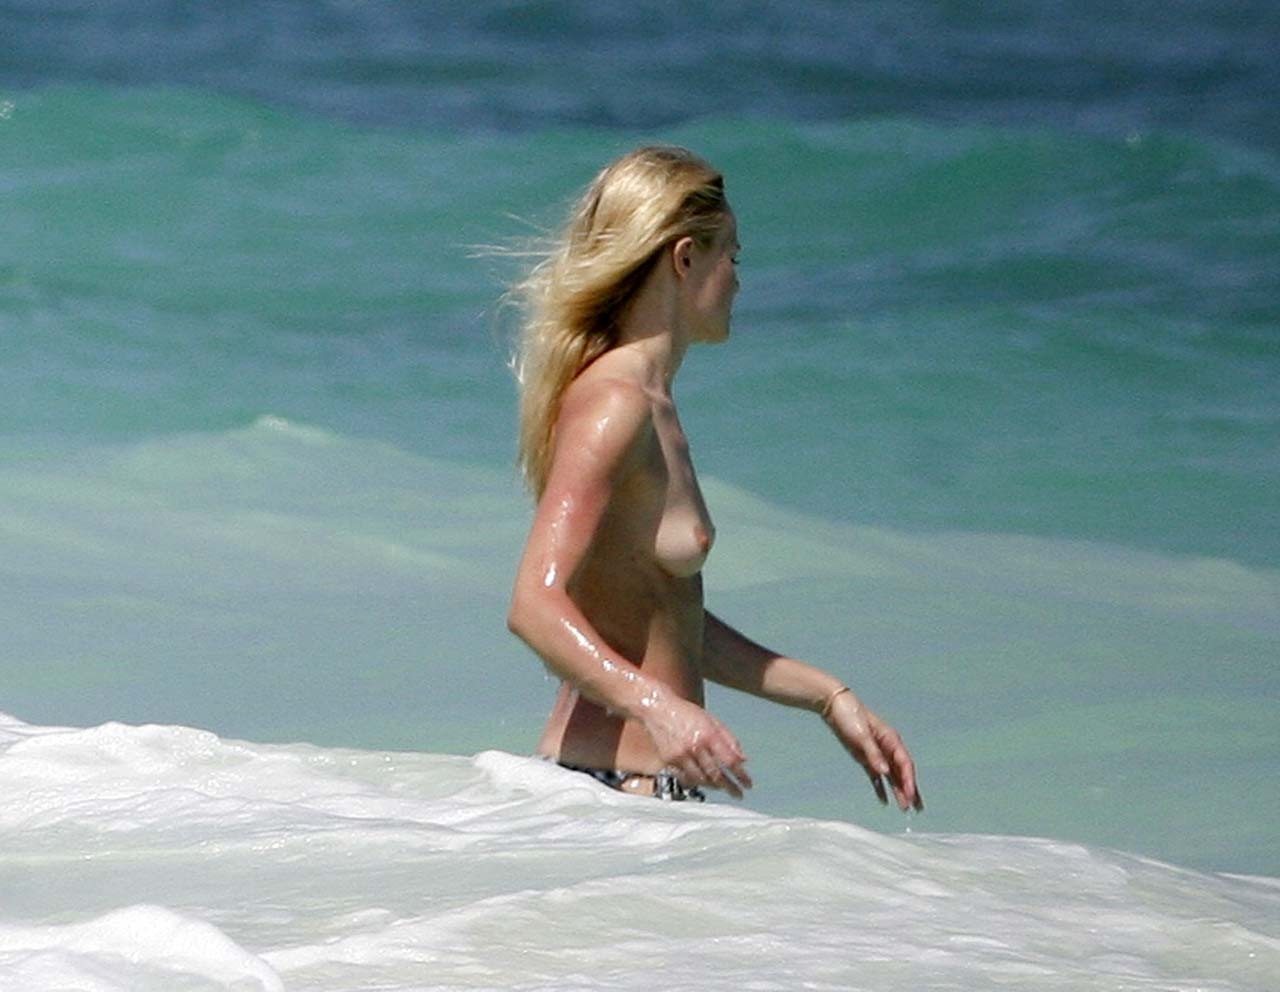 Kate bosworth exponiendo sus bonitas tetas grandes y jugando en la playa foto paparazzi
 #75308488